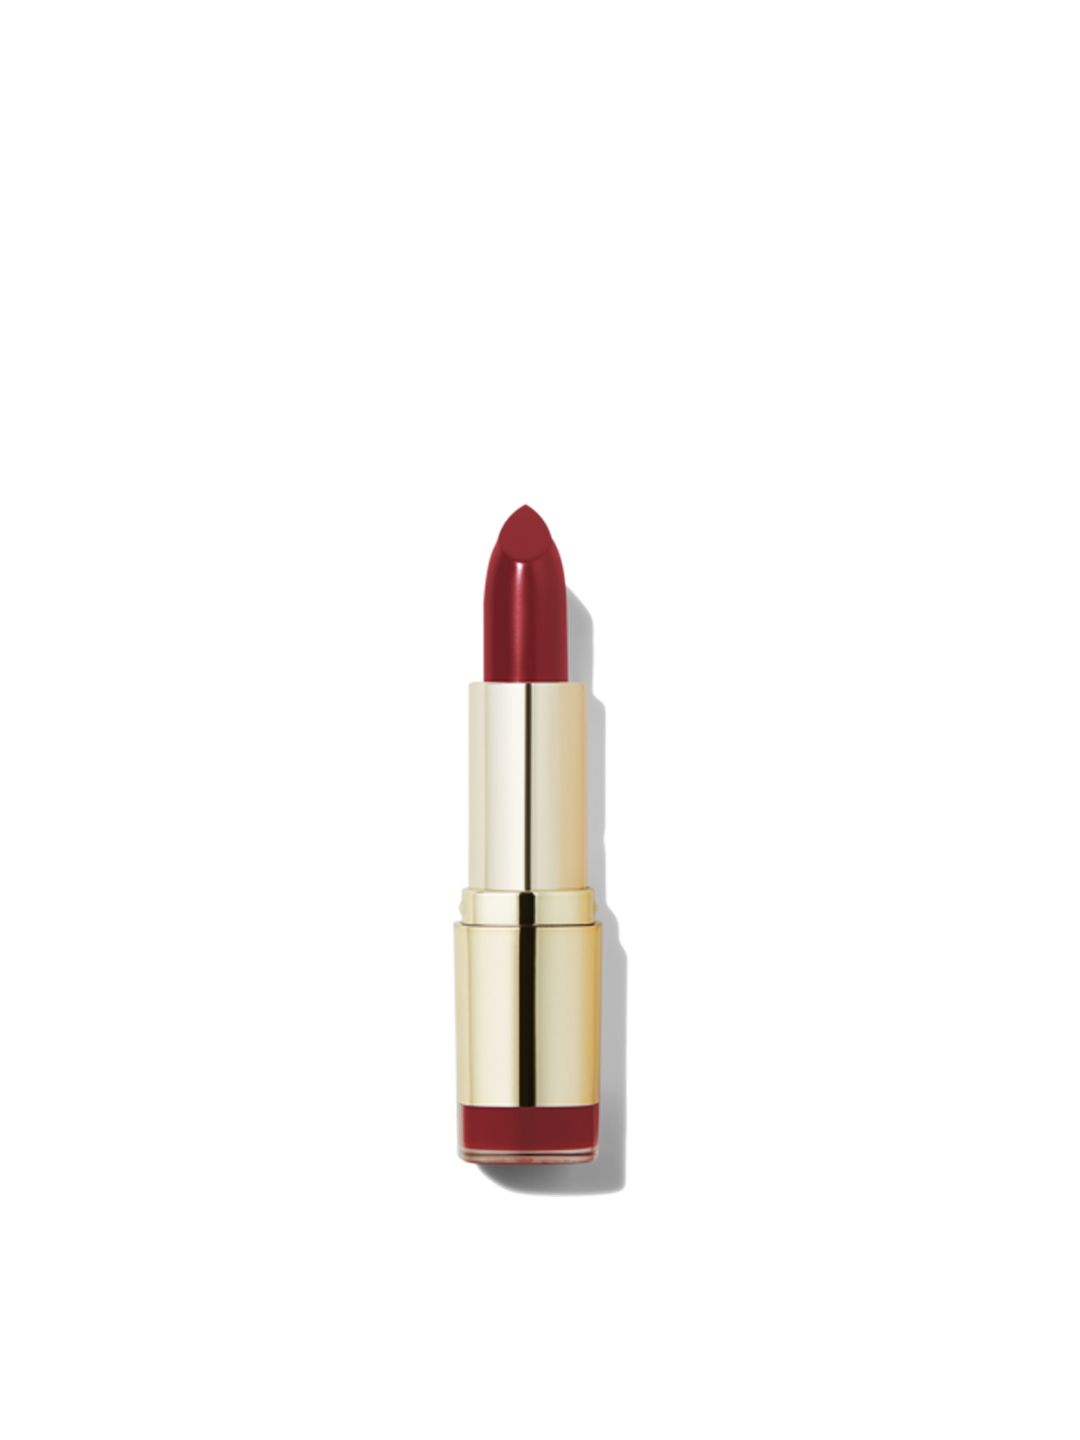 MILANI Matte Color Statement Lipstick Matte Confident 67 Price in India